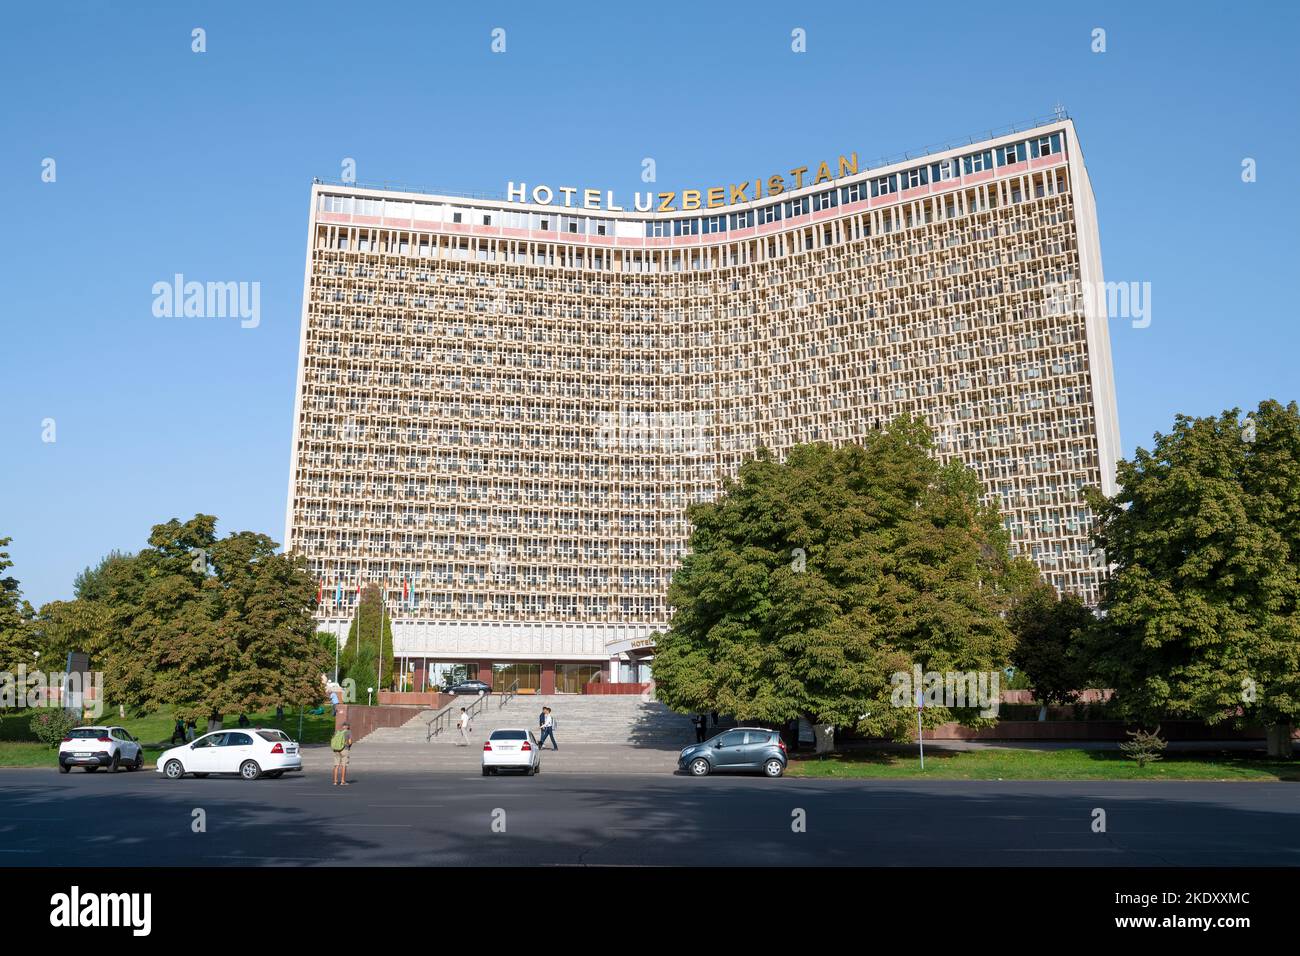 TASHKENT, UZBEKISTAN - SEPTEMBER 15, 2022: View of the hotel "Uzbekistan" on a sunny September day Stock Photo